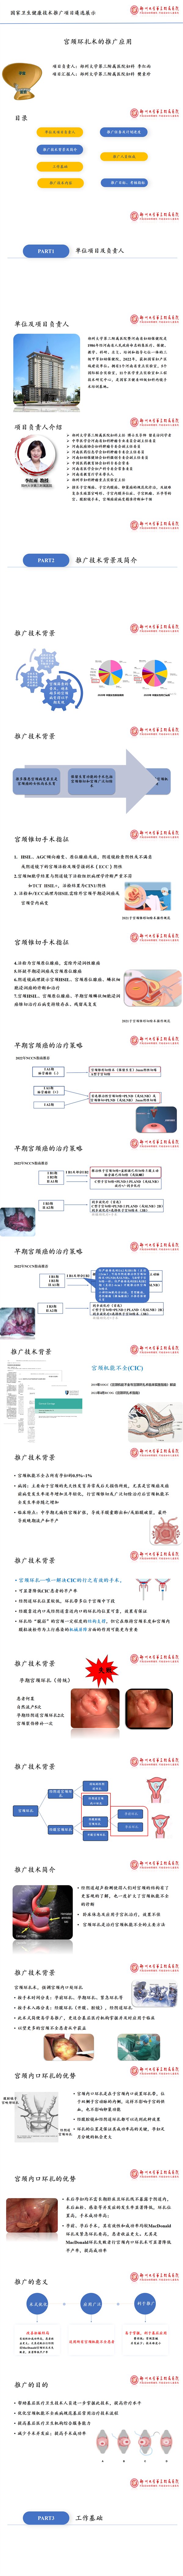 李红雨-宫颈环扎术的推广应用PPT_01.png